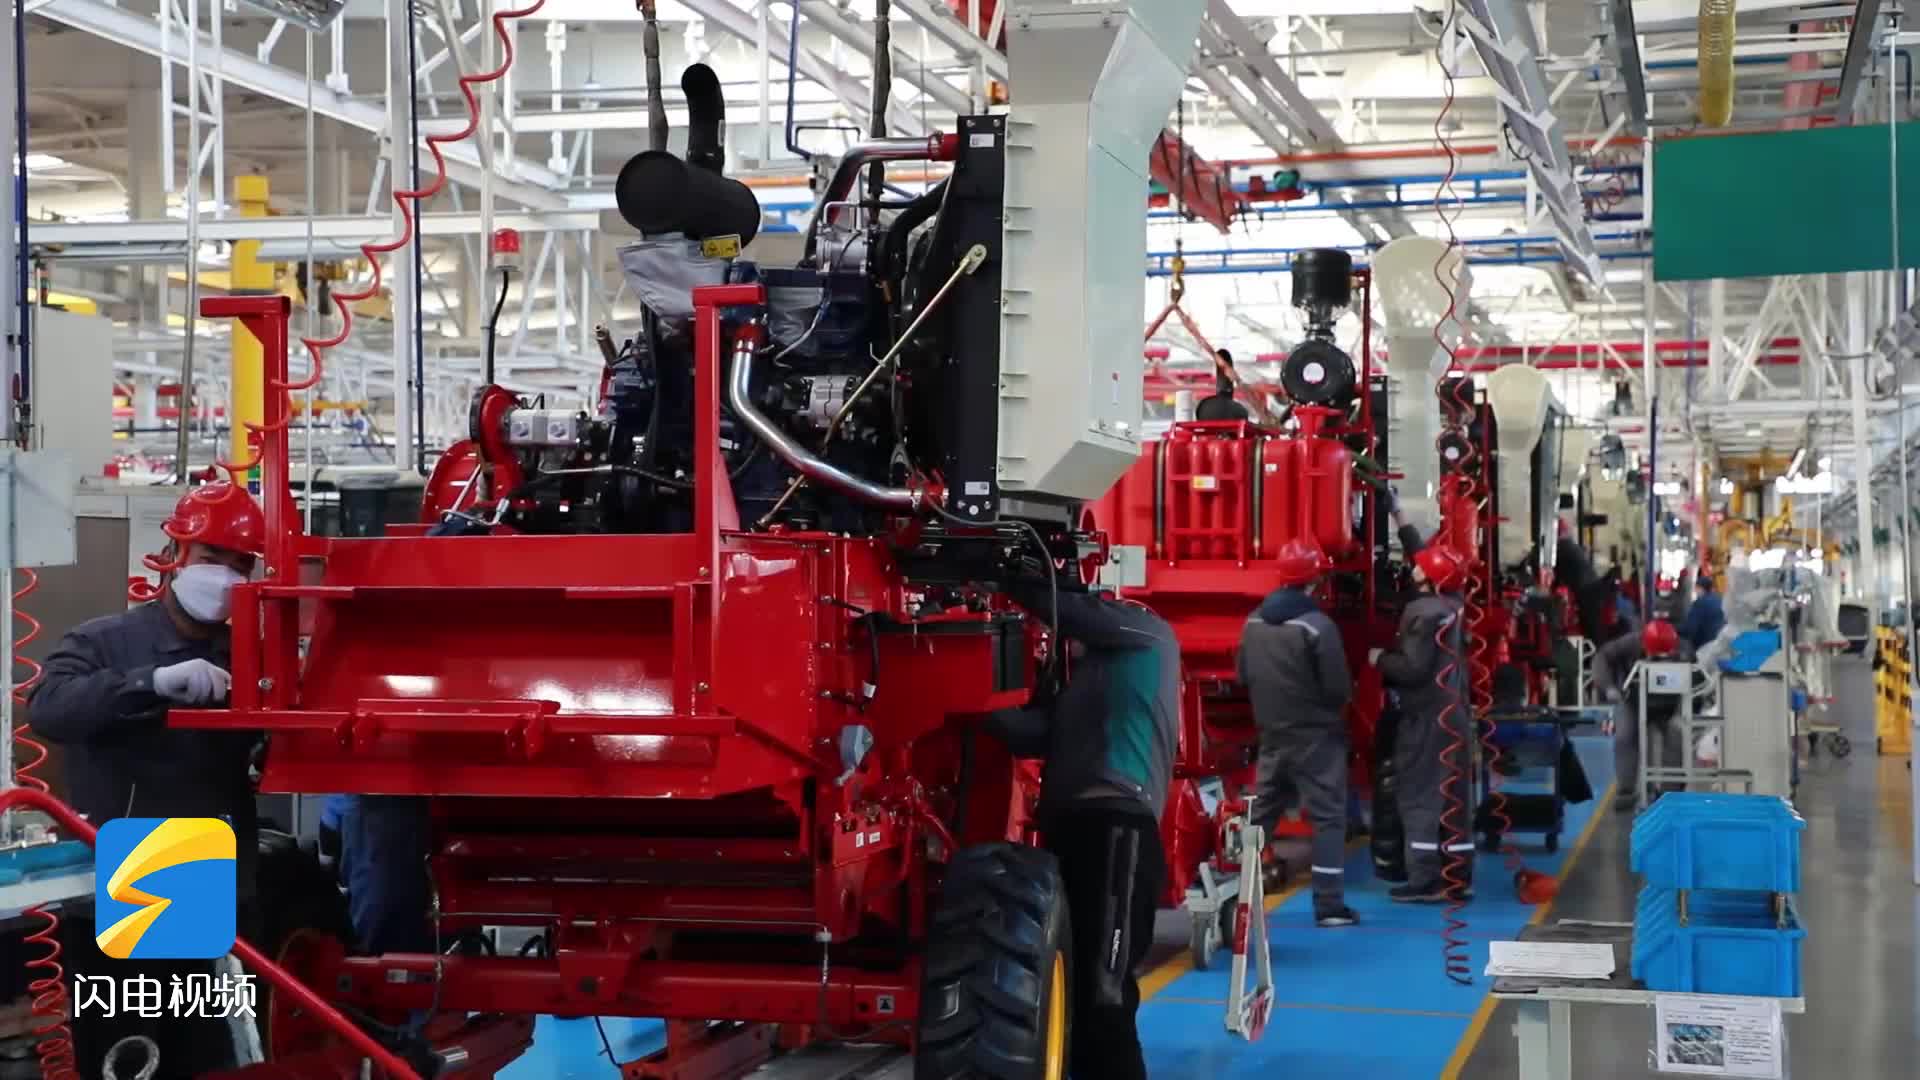 潍柴雷沃重工日产320台拖拉机 开足马力助春耕